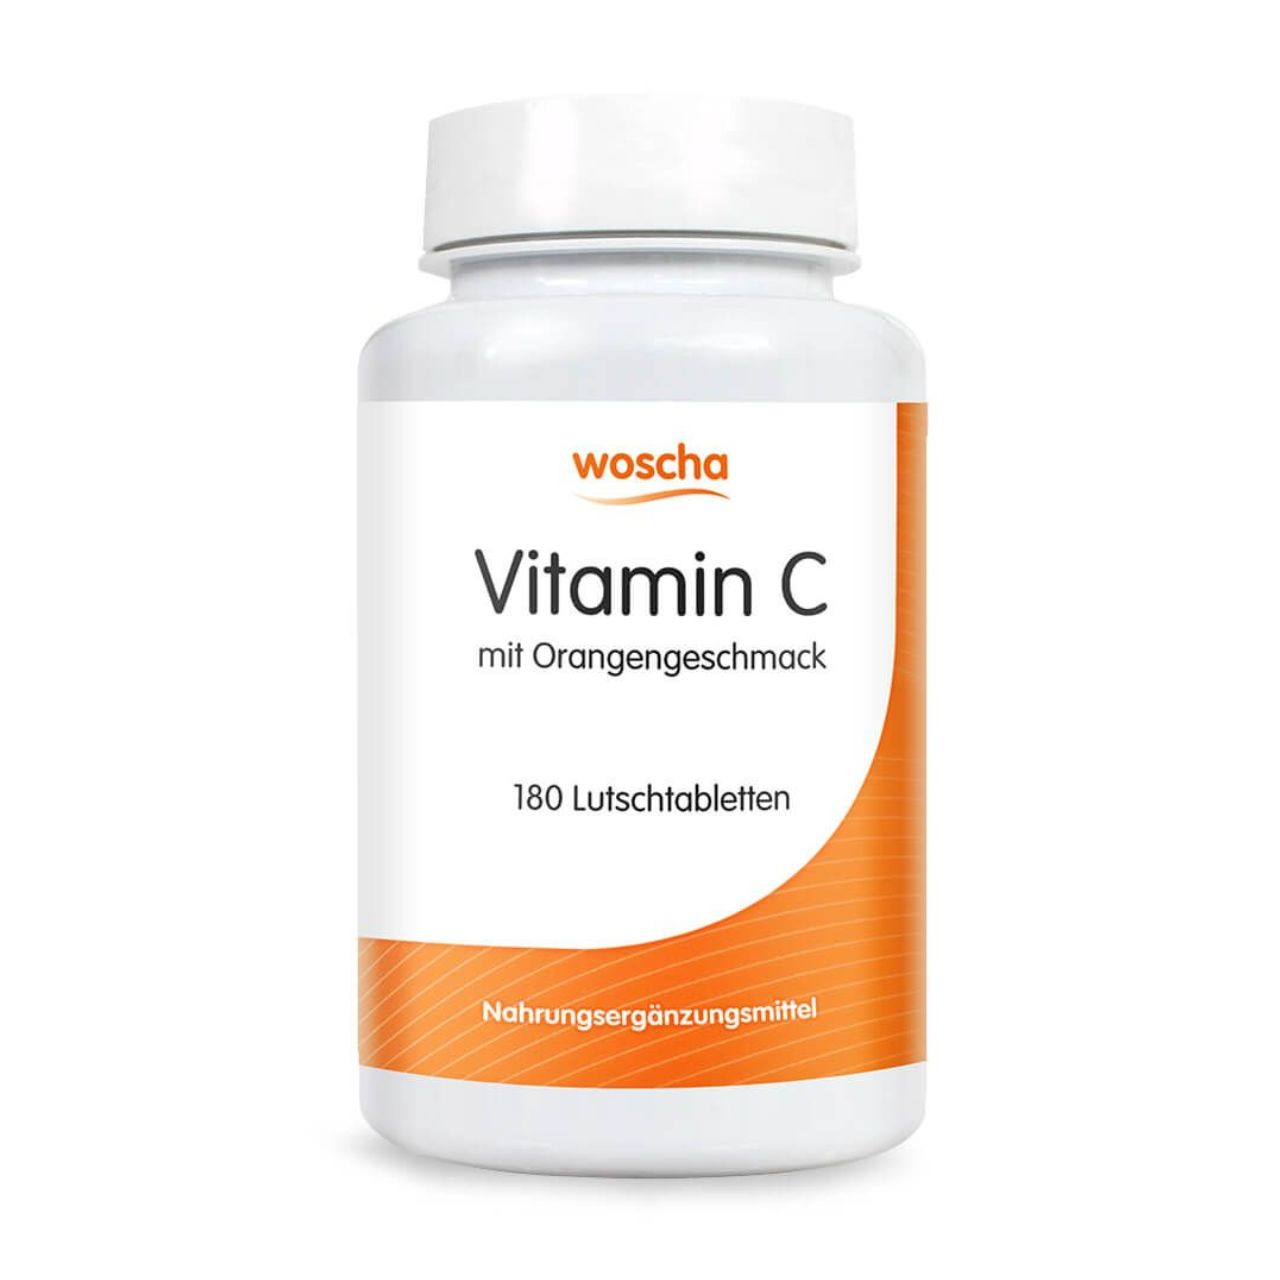 Woscha Vitamin C von podo medi beinhaltet 180 Lutschtabletten